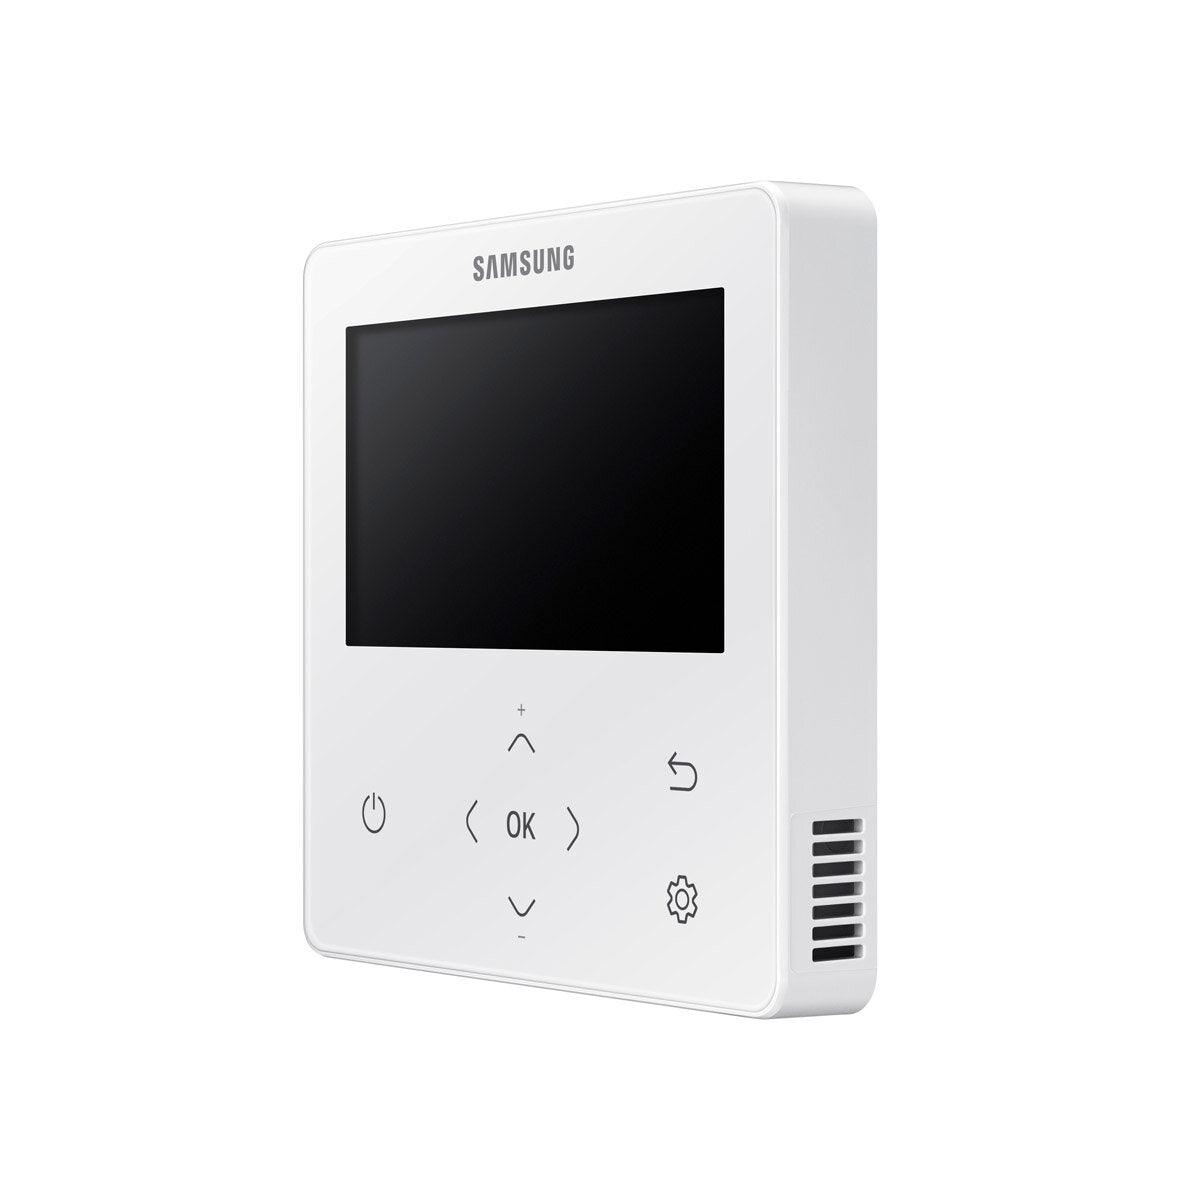 Samsung Klimaanlage Windfree 4-Wege Trial Split 12000 + 12000 + 12000 BTU Inverter A++ Außengerät 6,8 kW